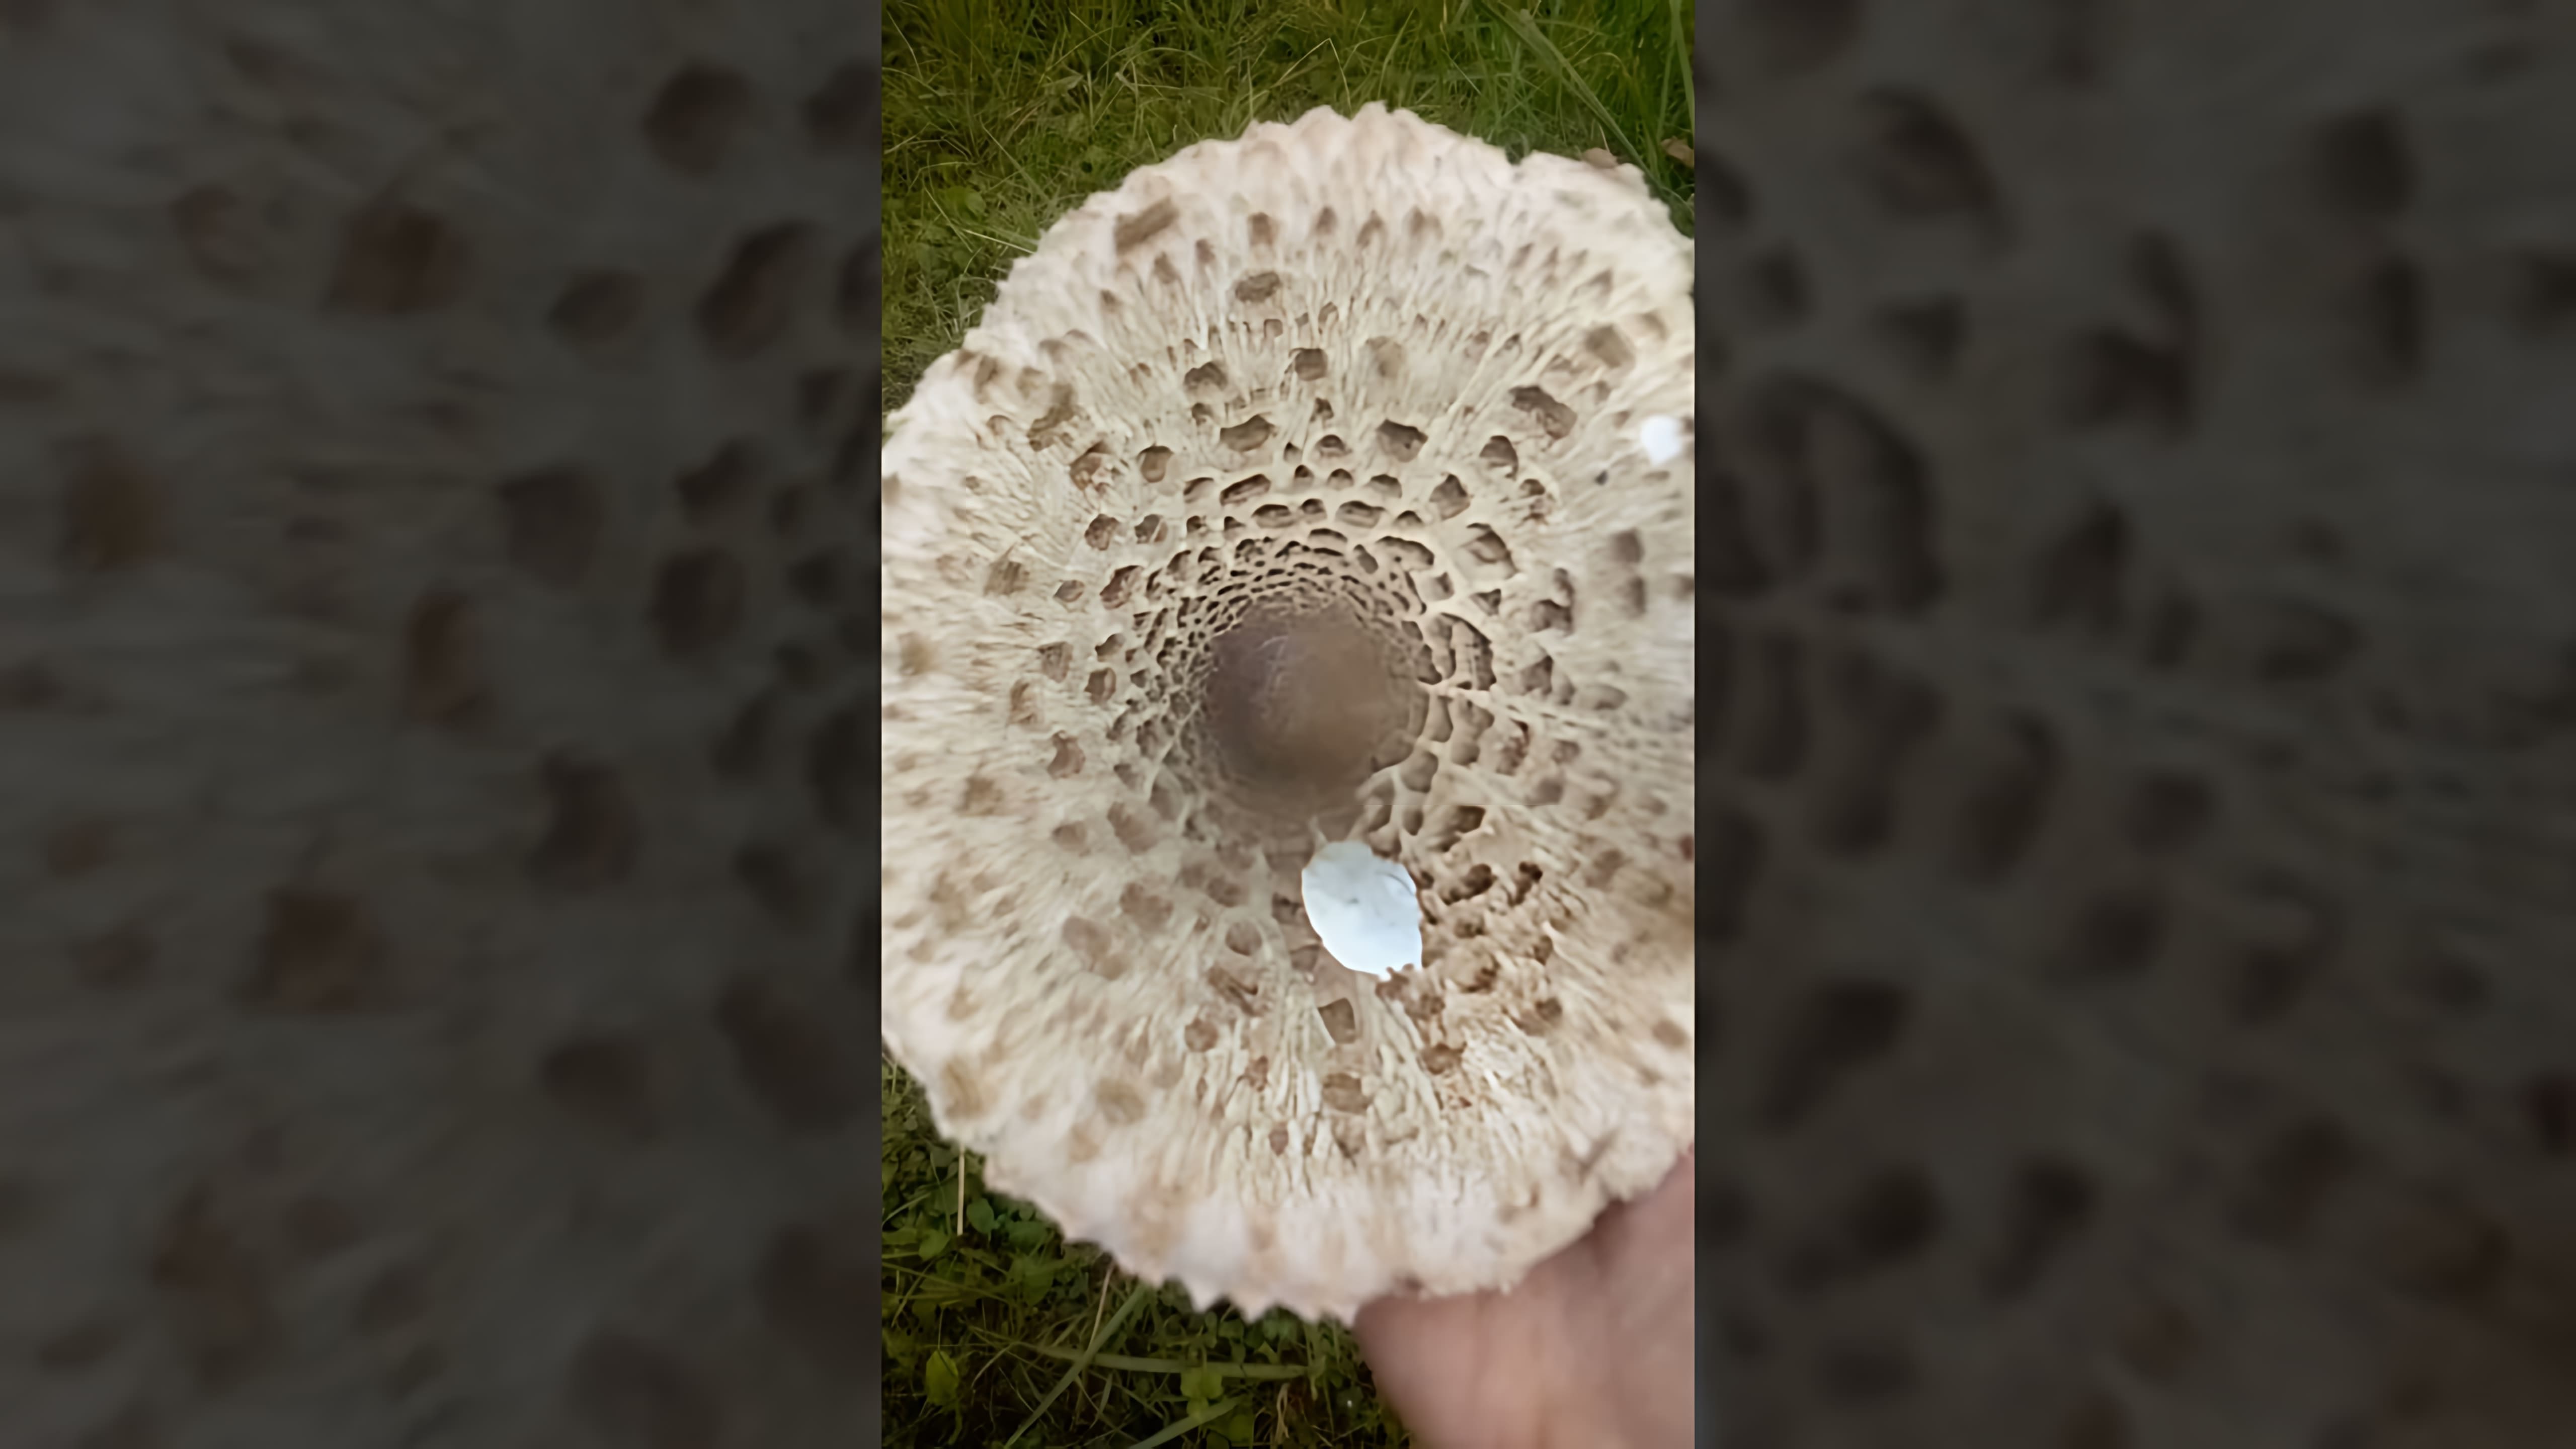 В этом видео рассказывается о грибе зонтике, который является съедобным и относится к семейству шампиньонов